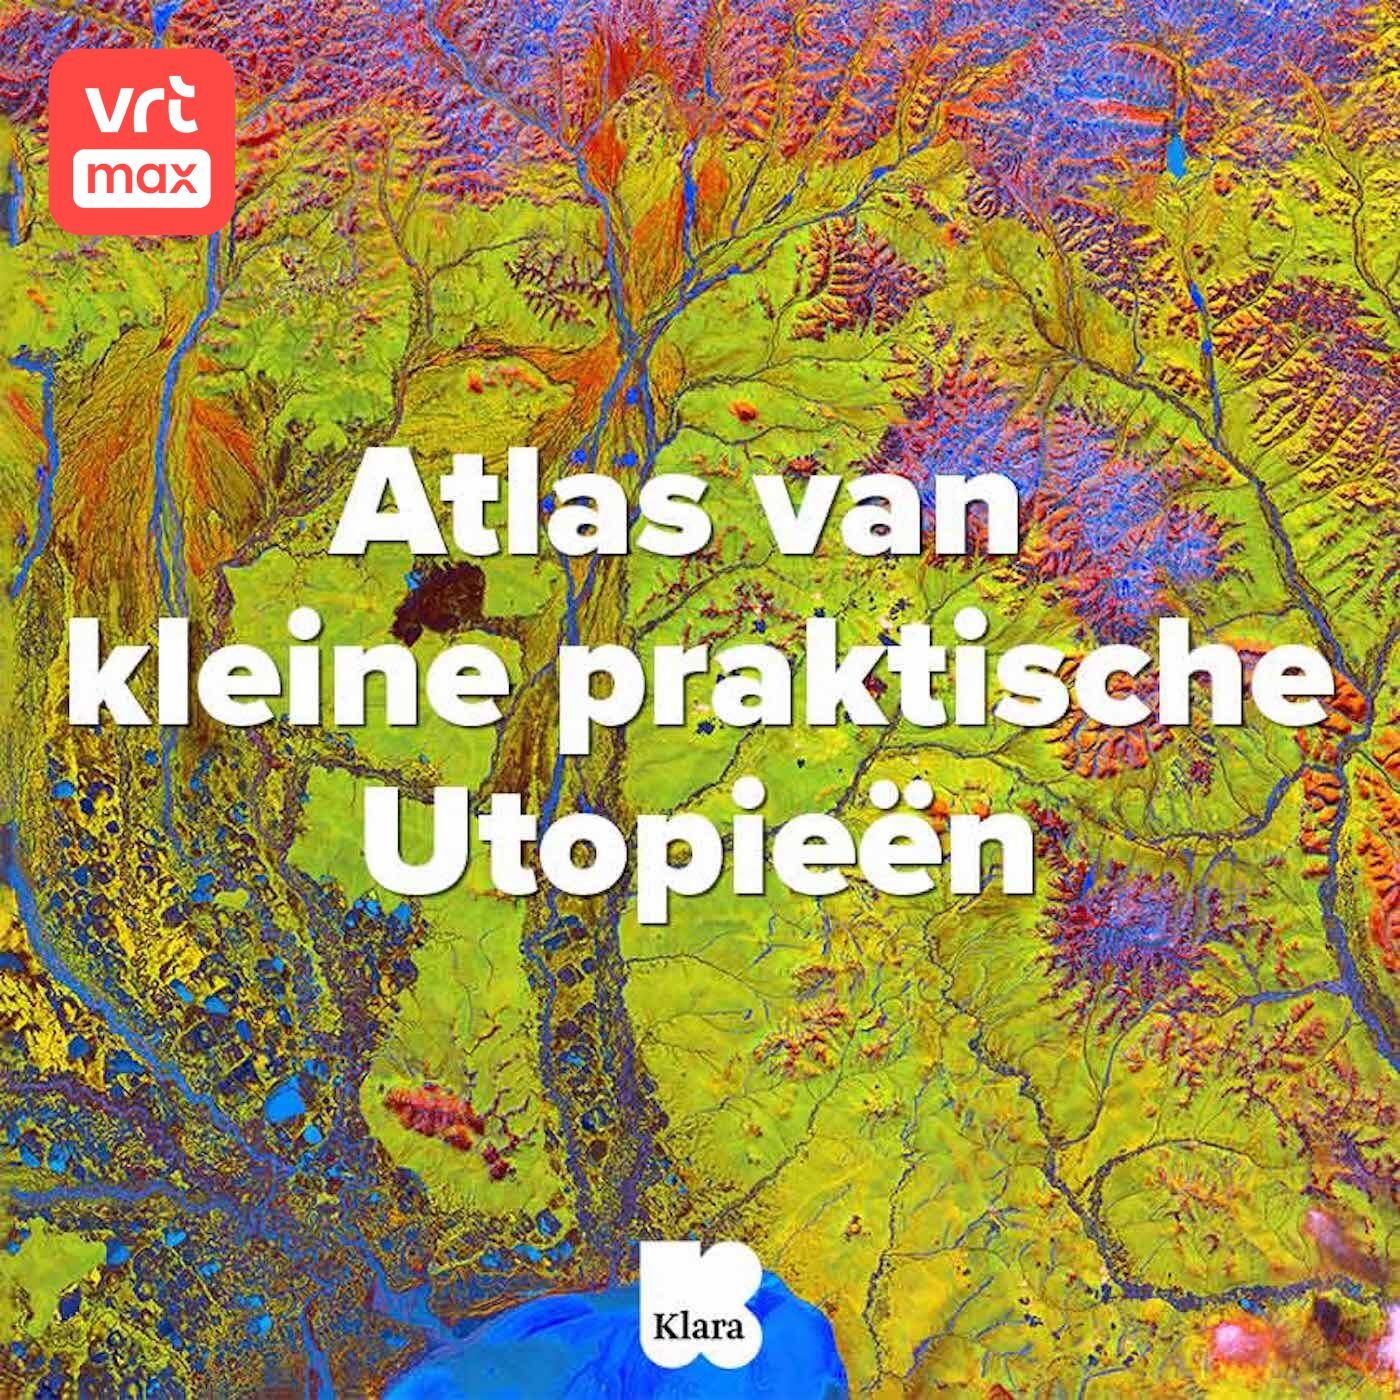 De Atlas van kleine praktische Utopieën logo